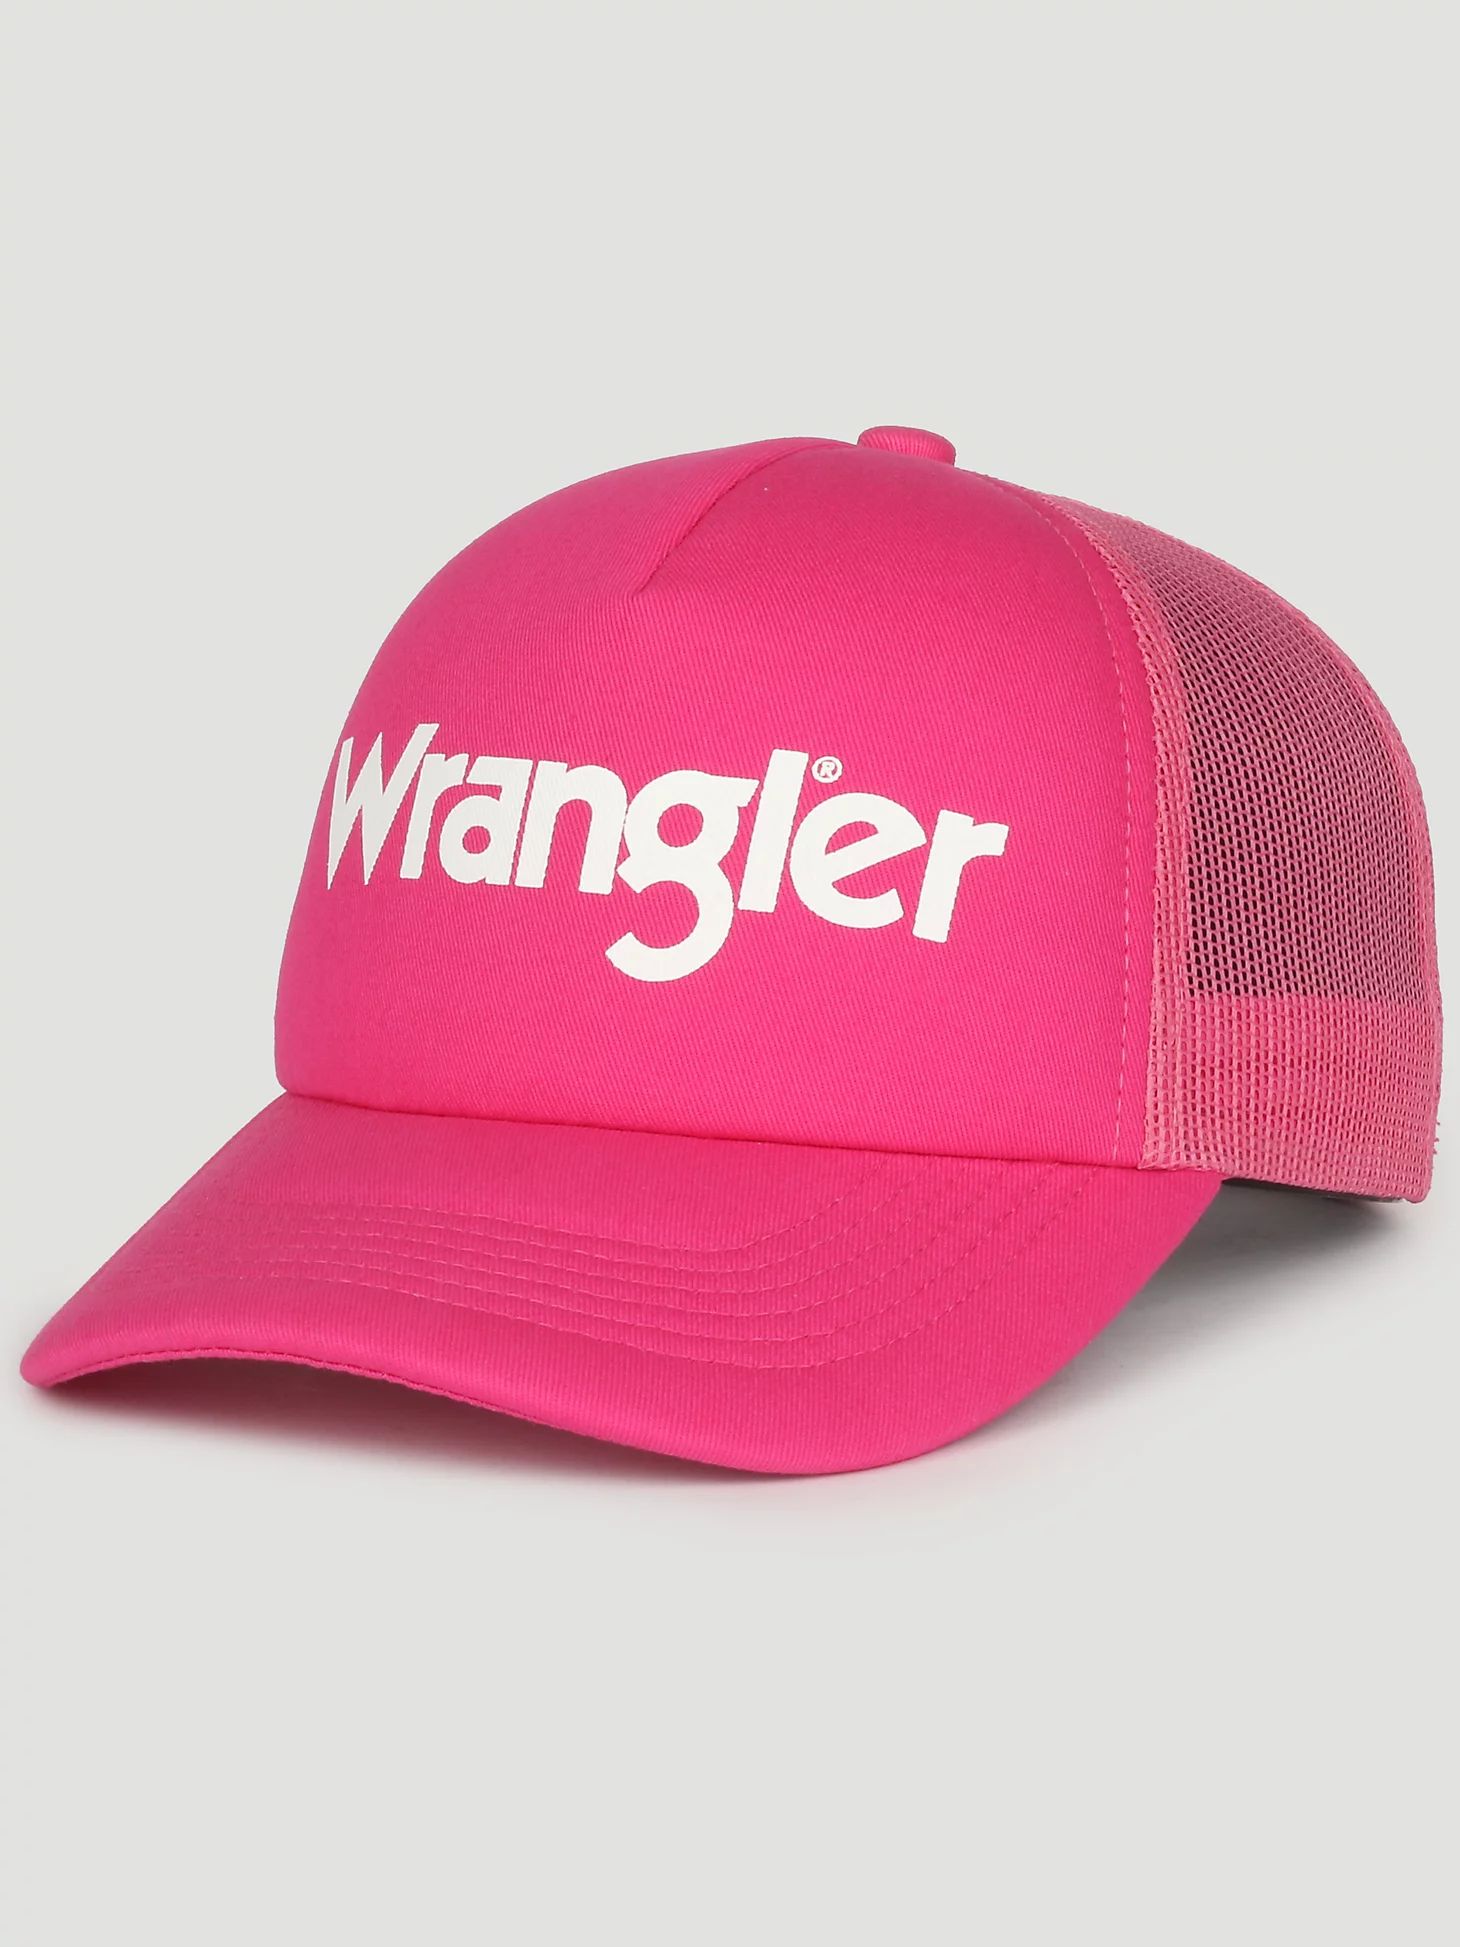 Wrangler Logo Baseball Cap in Pink | Wrangler